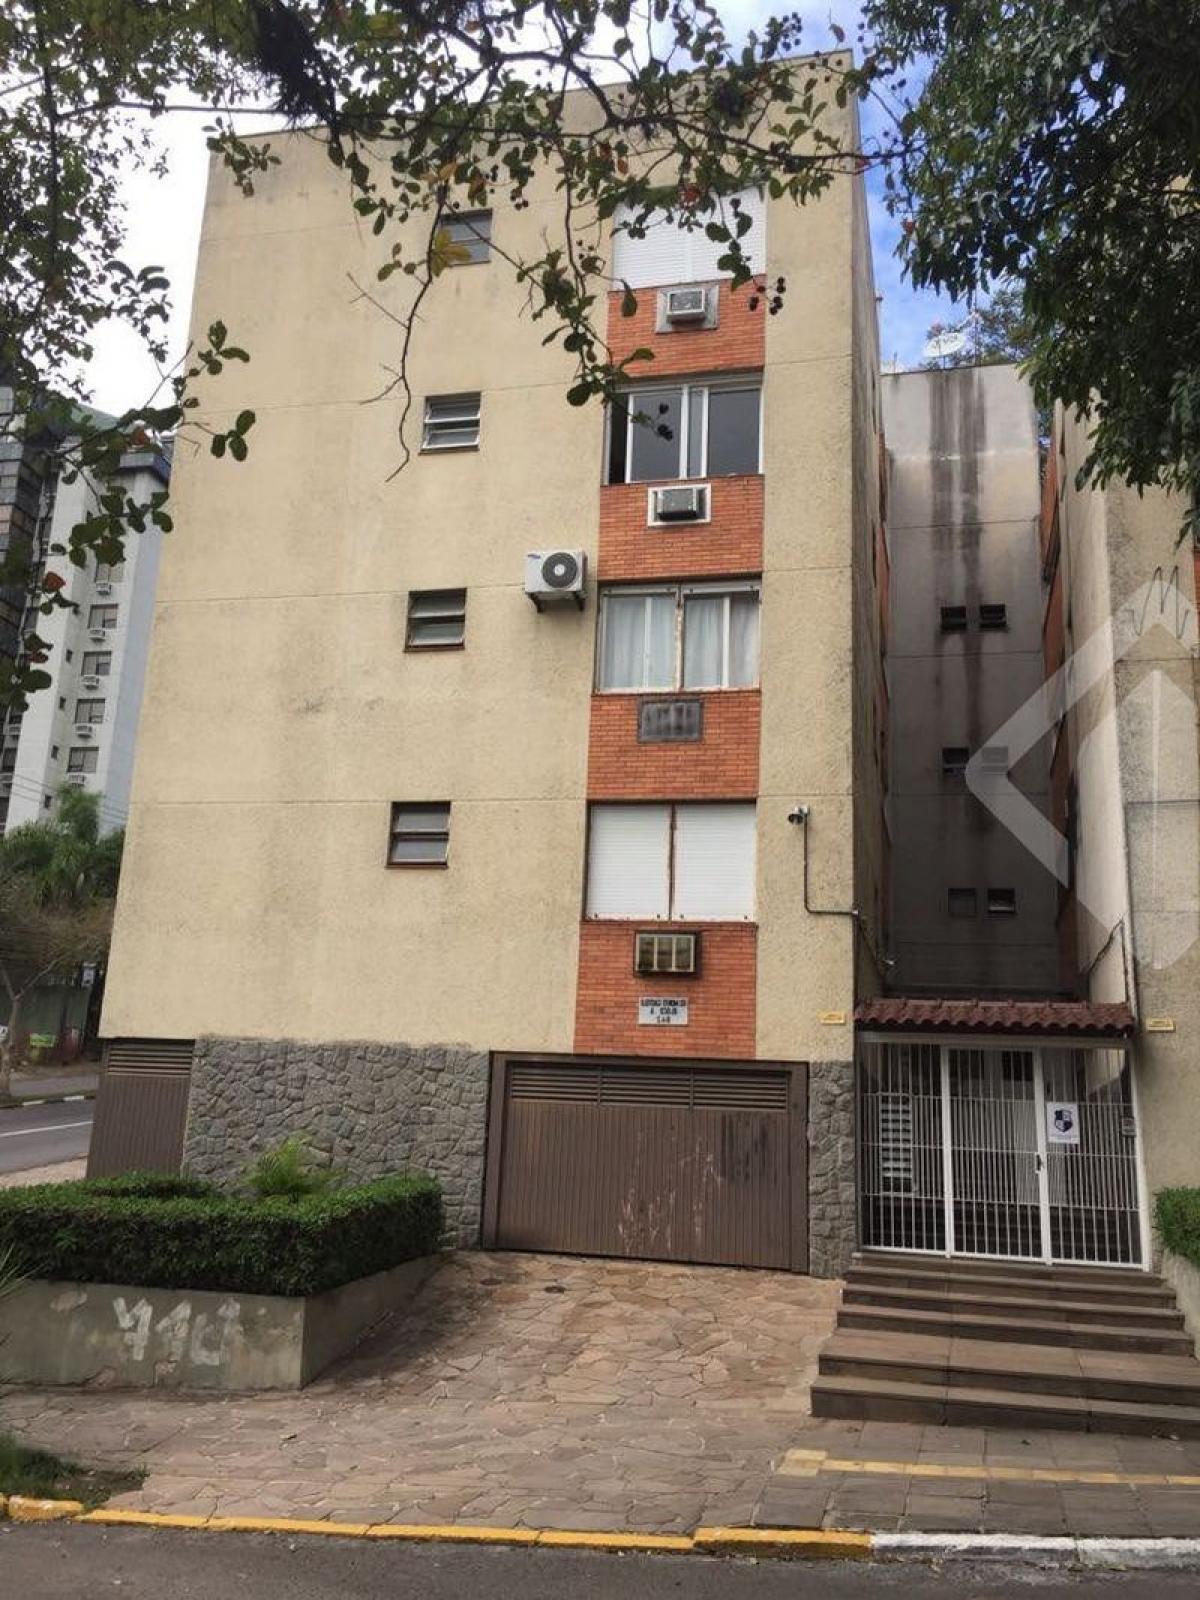 Picture of Apartment For Sale in Canoas, Rio Grande do Sul, Brazil